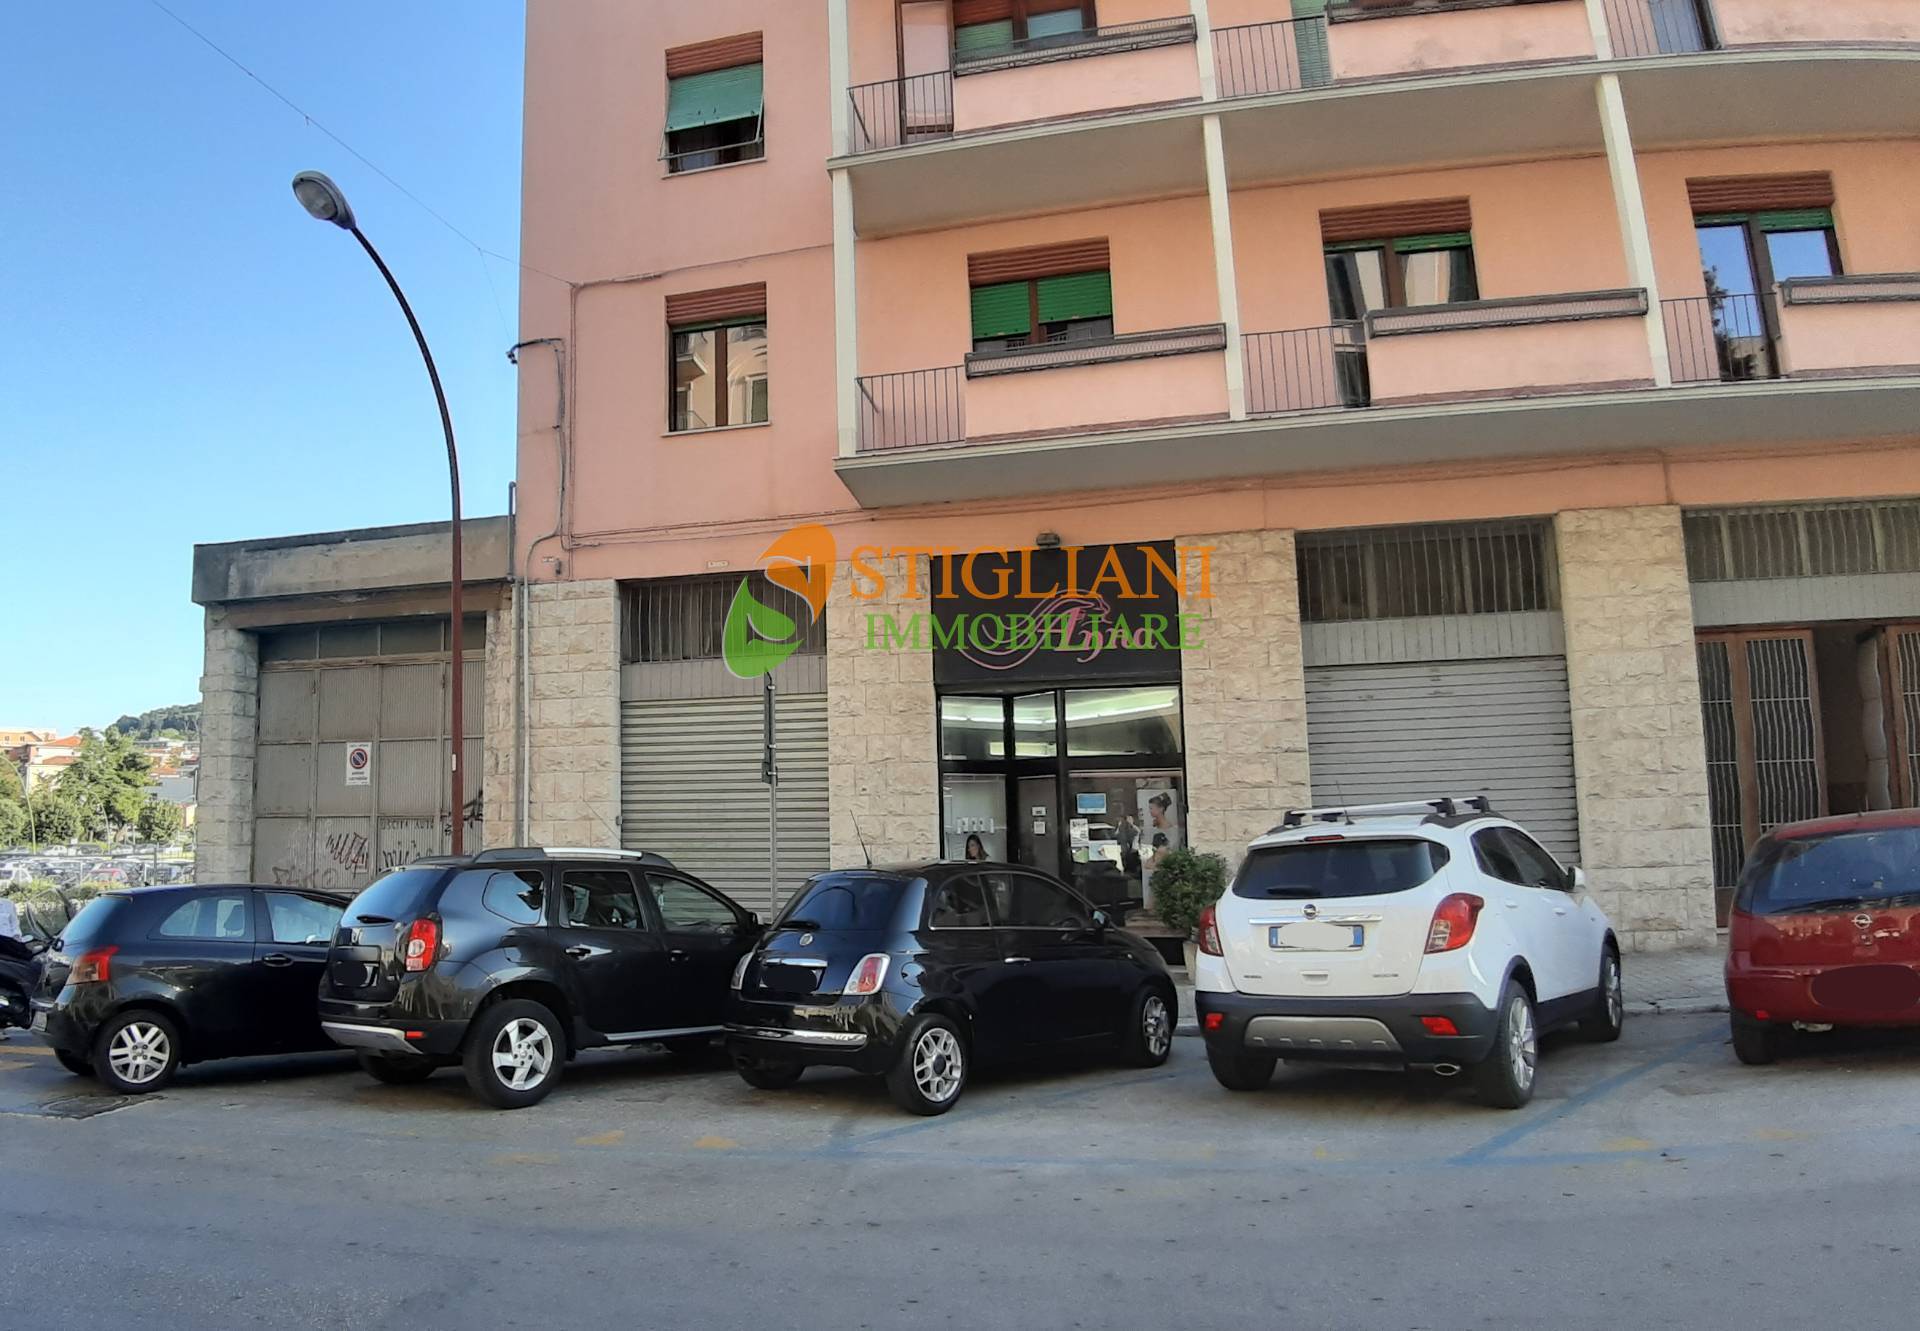 Locale commerciale in vendita, Campobasso centro